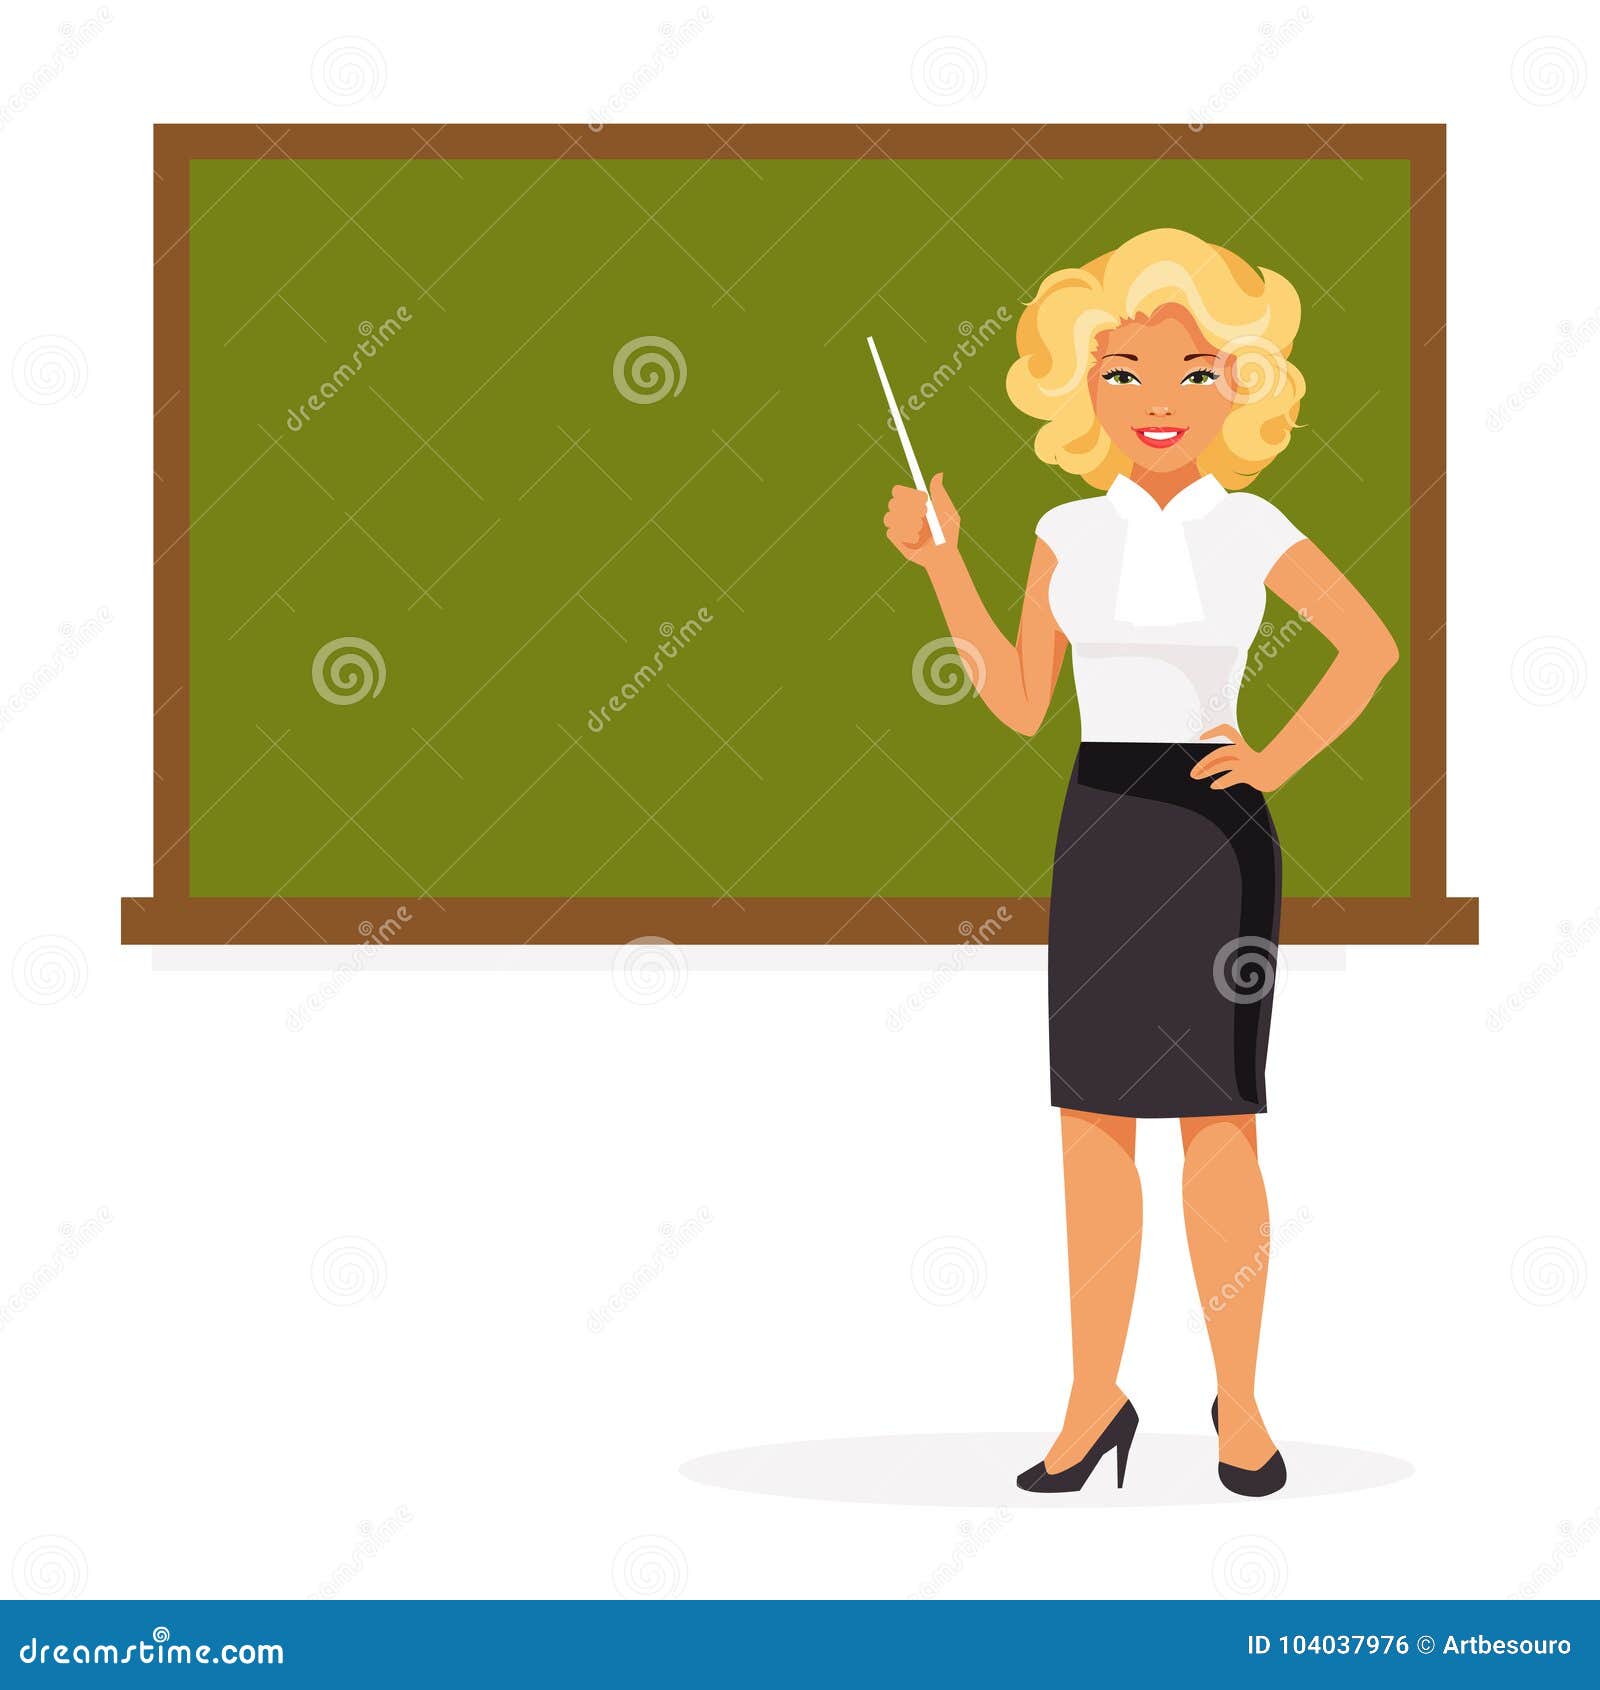 Схематично изобразить учитель на уроке. Женщина учитель иллюстрация. Учитель вектор. Учитель vector stock. Картинка учитель вектор.